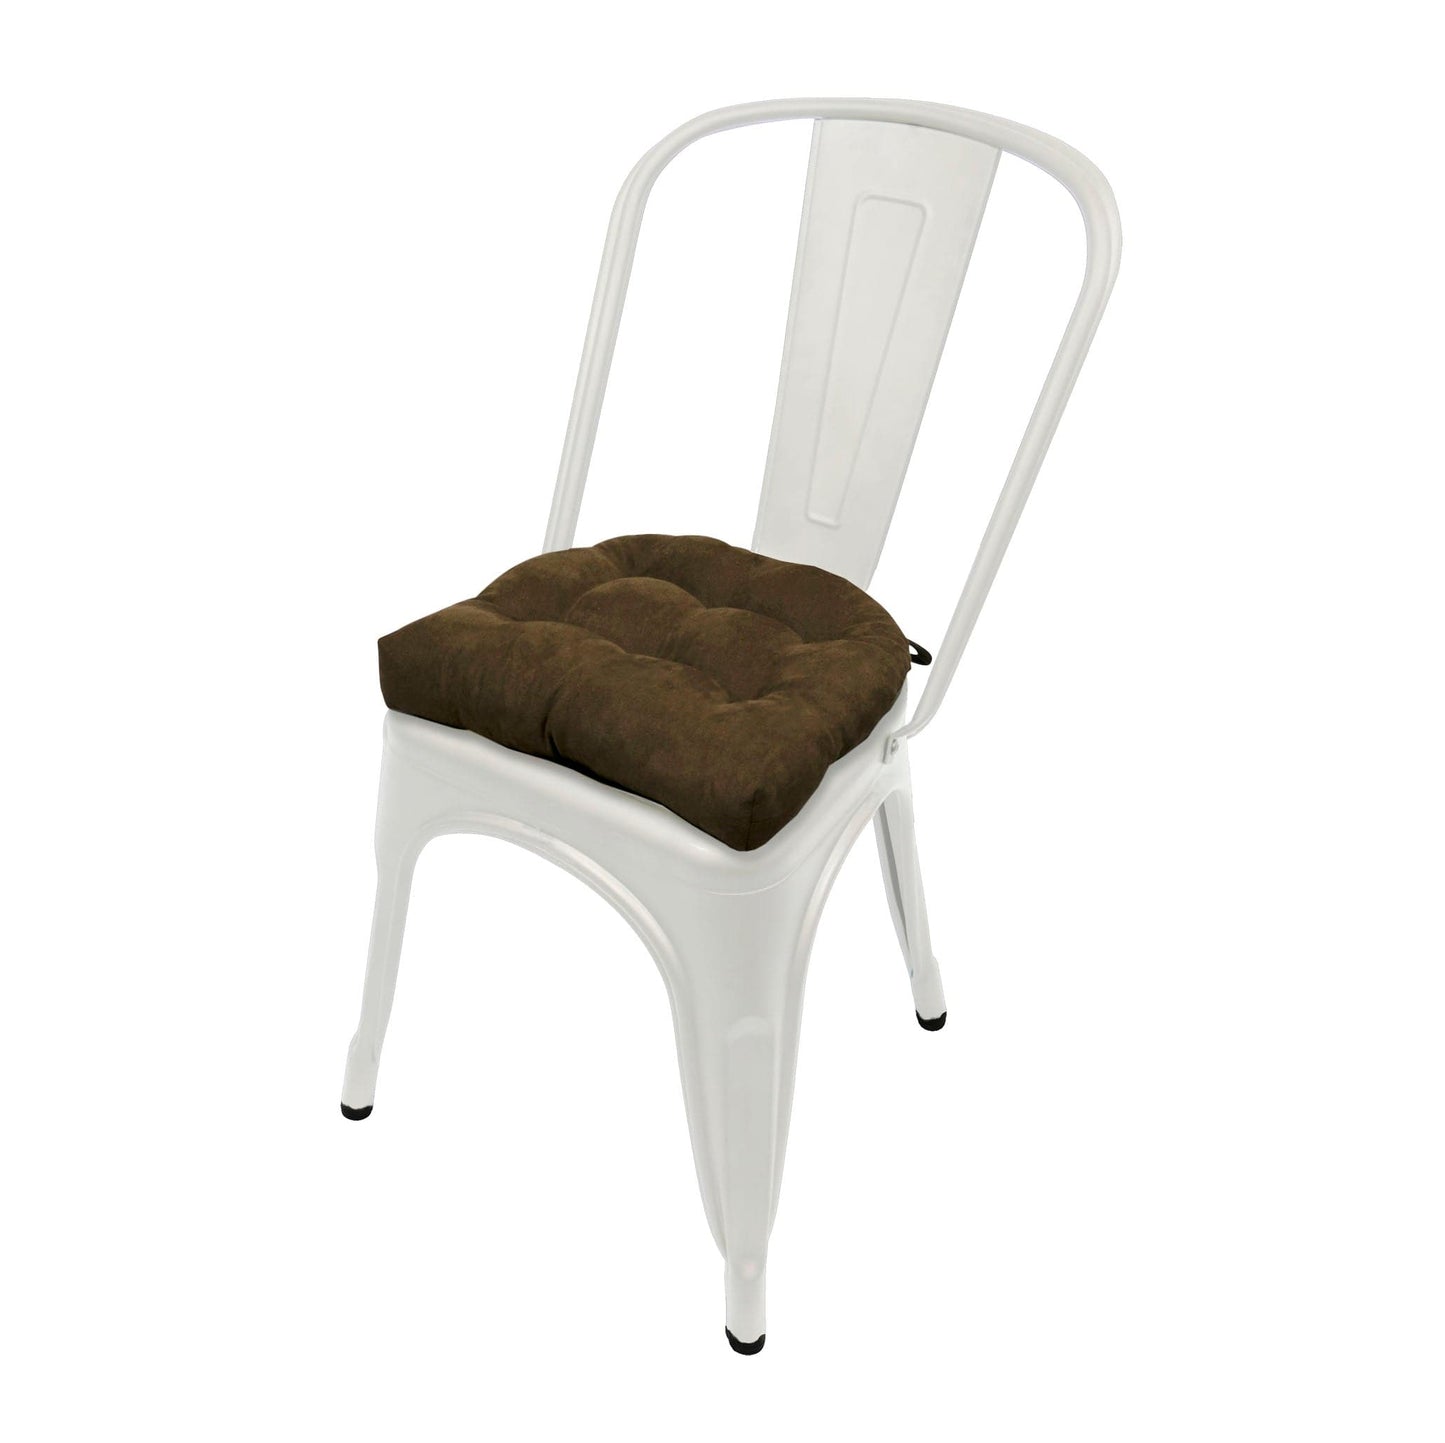 Micro-Suede Coffee Bean Brown Industrial Chair Cushion - Latex Foam Fill - Barnett Home Decor